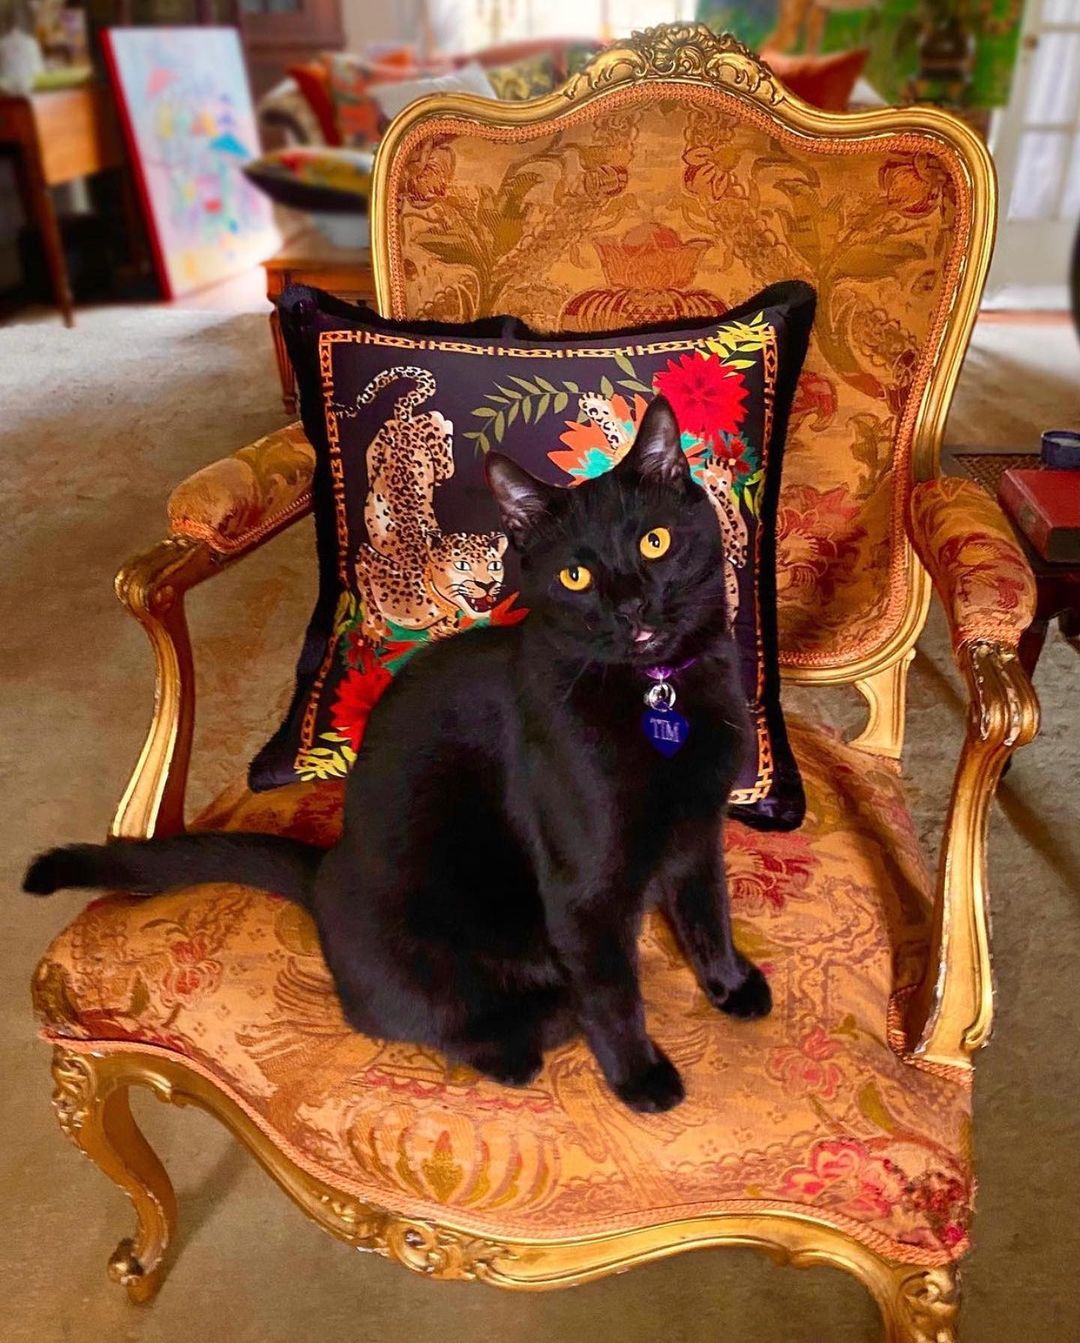 Mèo mun đen - Chú mèo ma thuật bí ẩn nhất thế giới